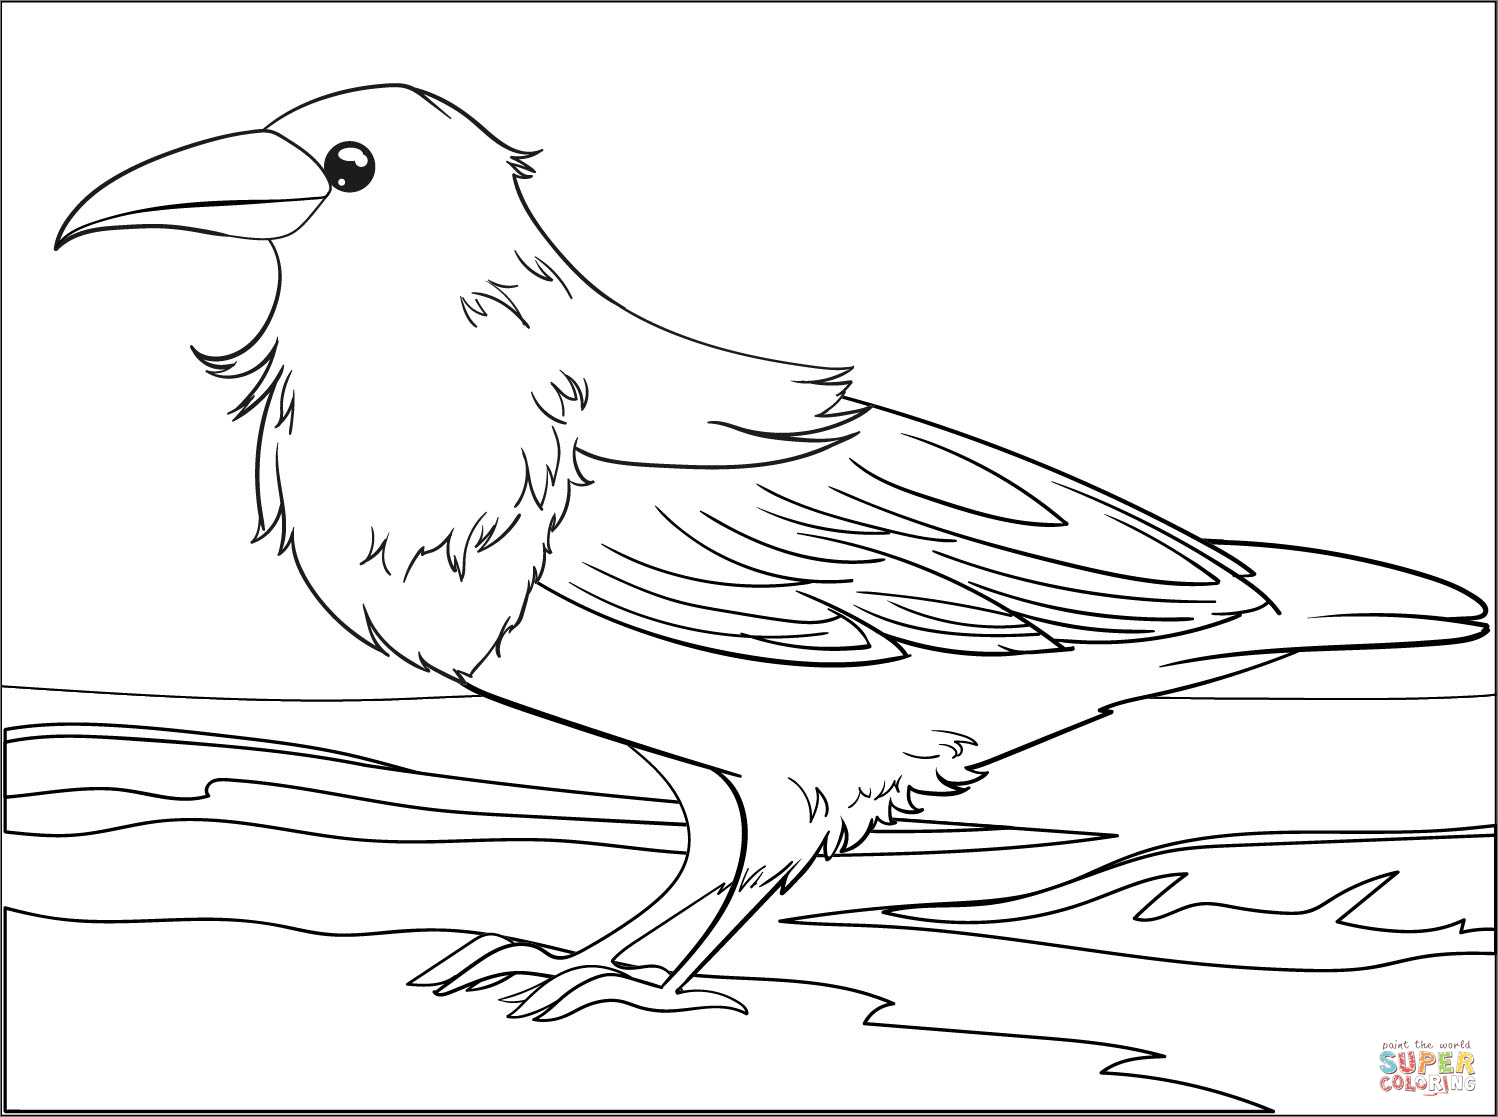 Dibujo de cuervo para colorear dibujos para colorear imprimir gratis